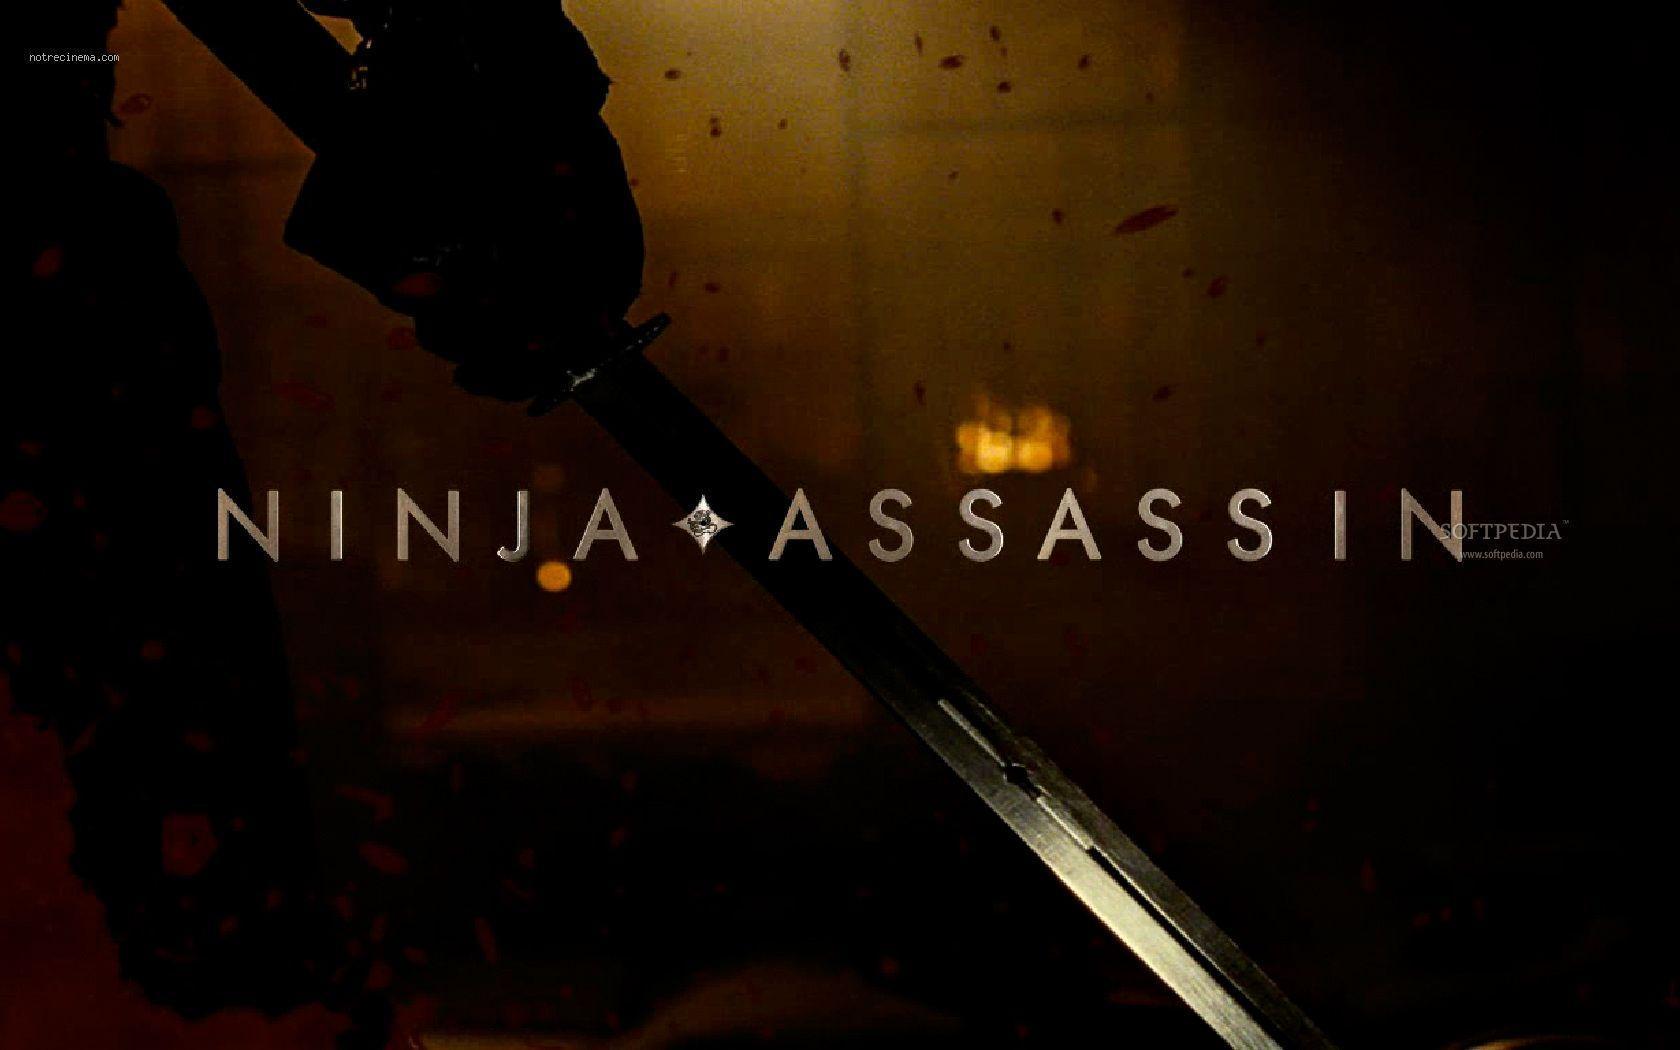 Wallpaper For > Ninja Assassin Movie Wallpaper